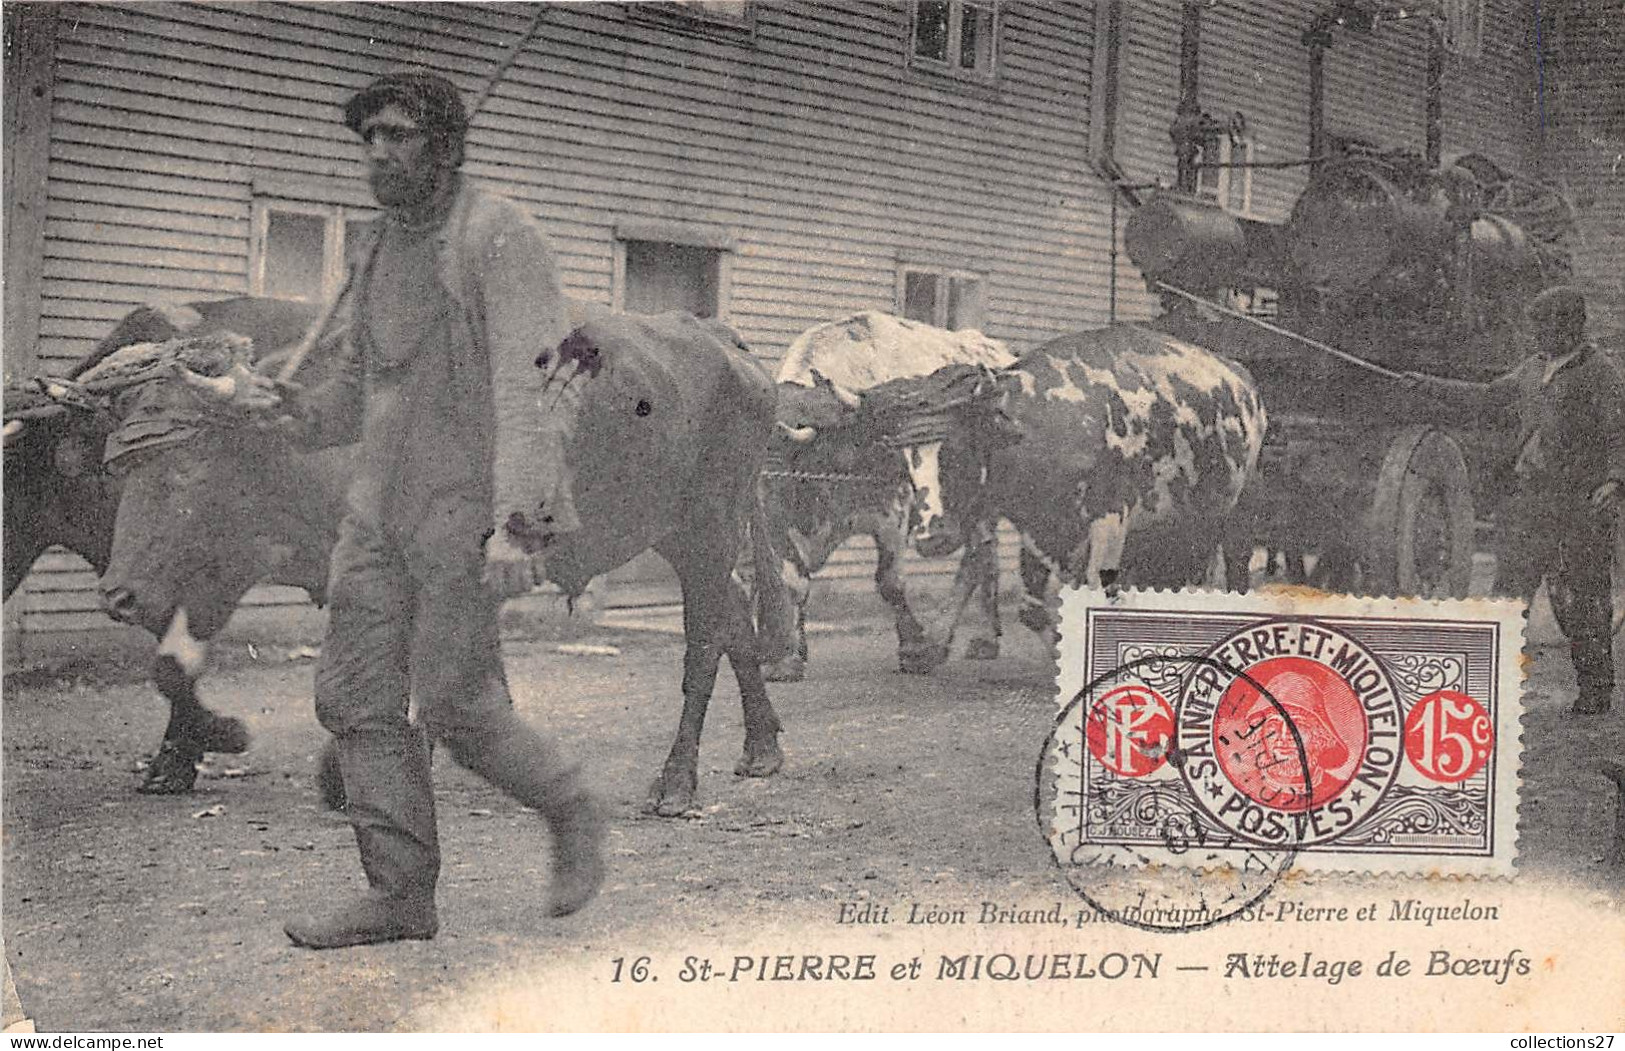 SAINT-PIERRE-ET-MIQUELON- ATTELAGE DE BOEUFS - Saint Pierre And Miquelon